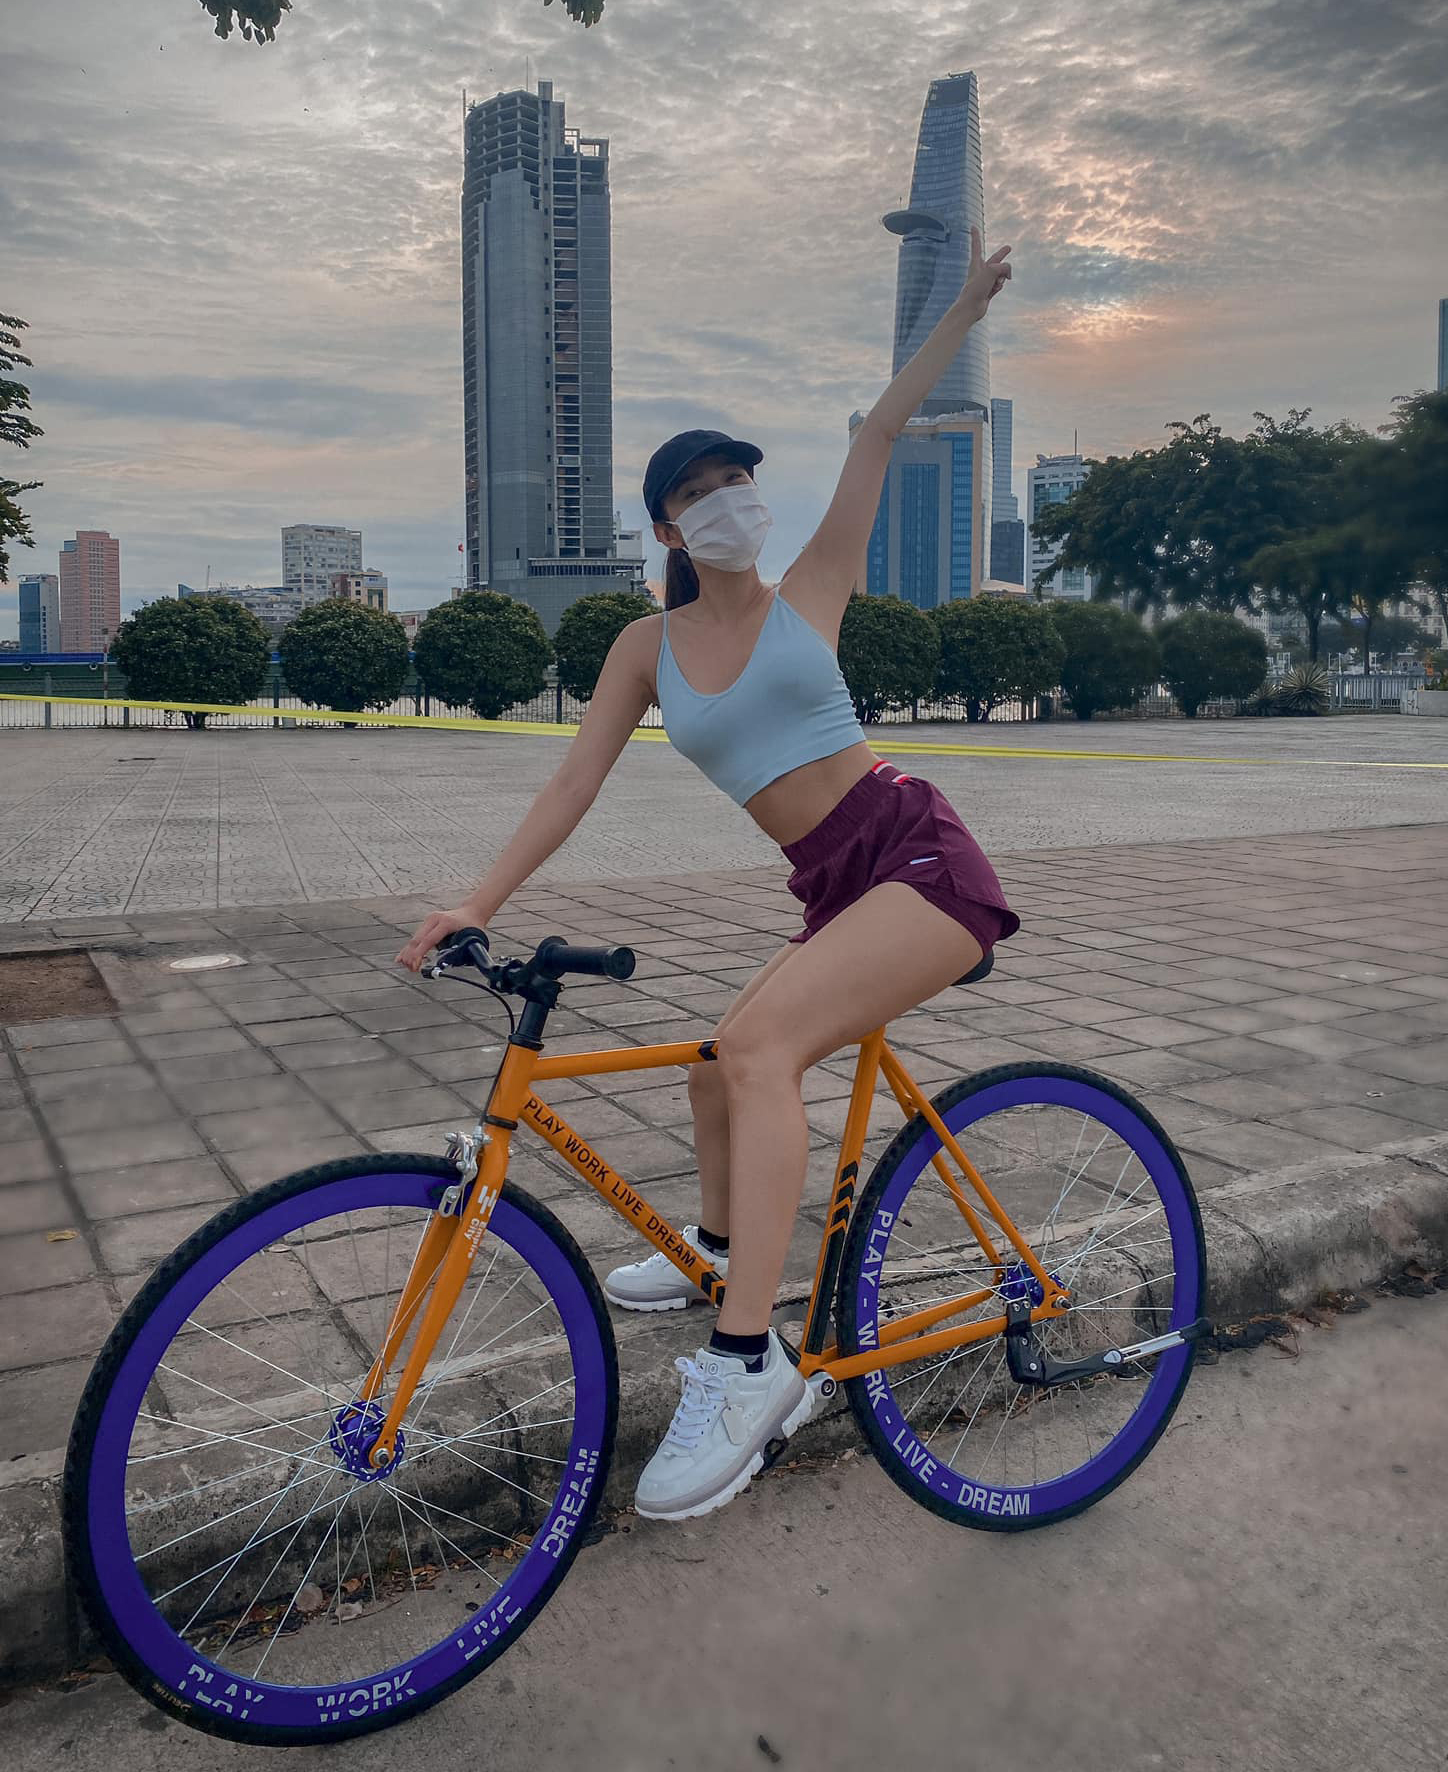 Cùng xem những bức ảnh độc đáo khi chụp ảnh với xe đạp, bằng cách đưa xe đạp vào khung hình, tạo nên những góc nhìn mới lạ cho bức ảnh.